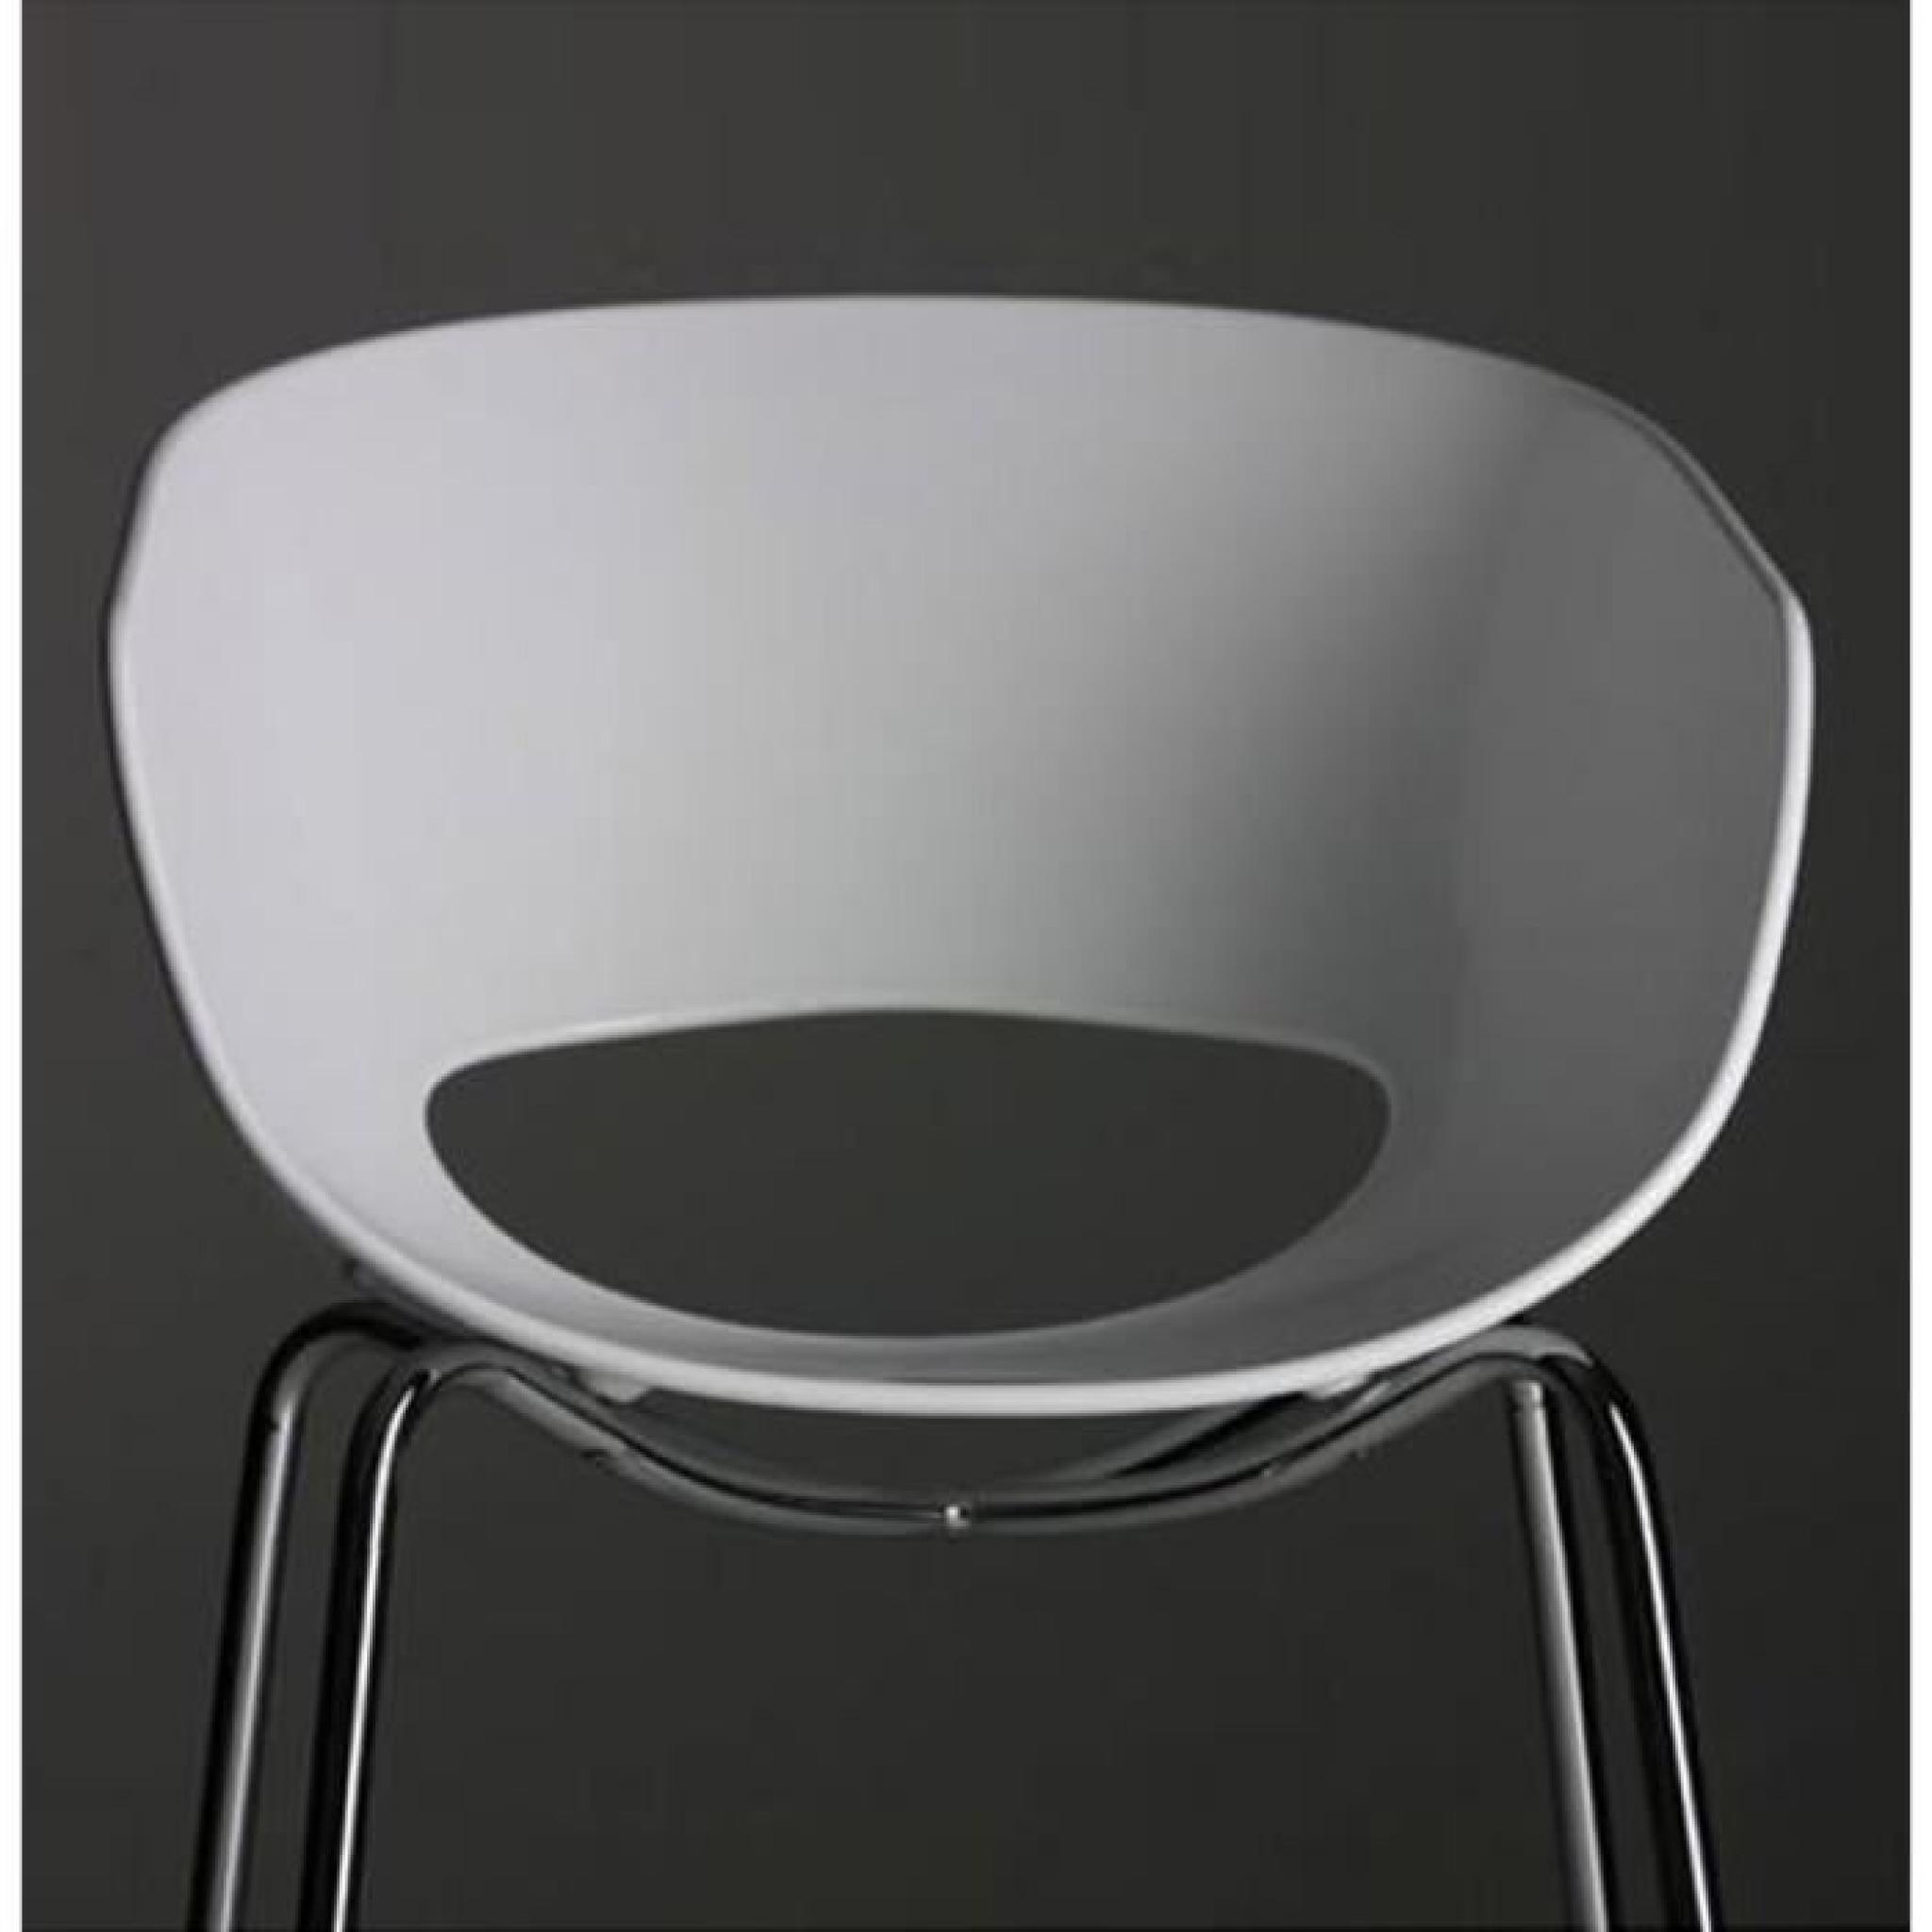 Chaise design 'ORBIT' coque plastique blanche pas cher